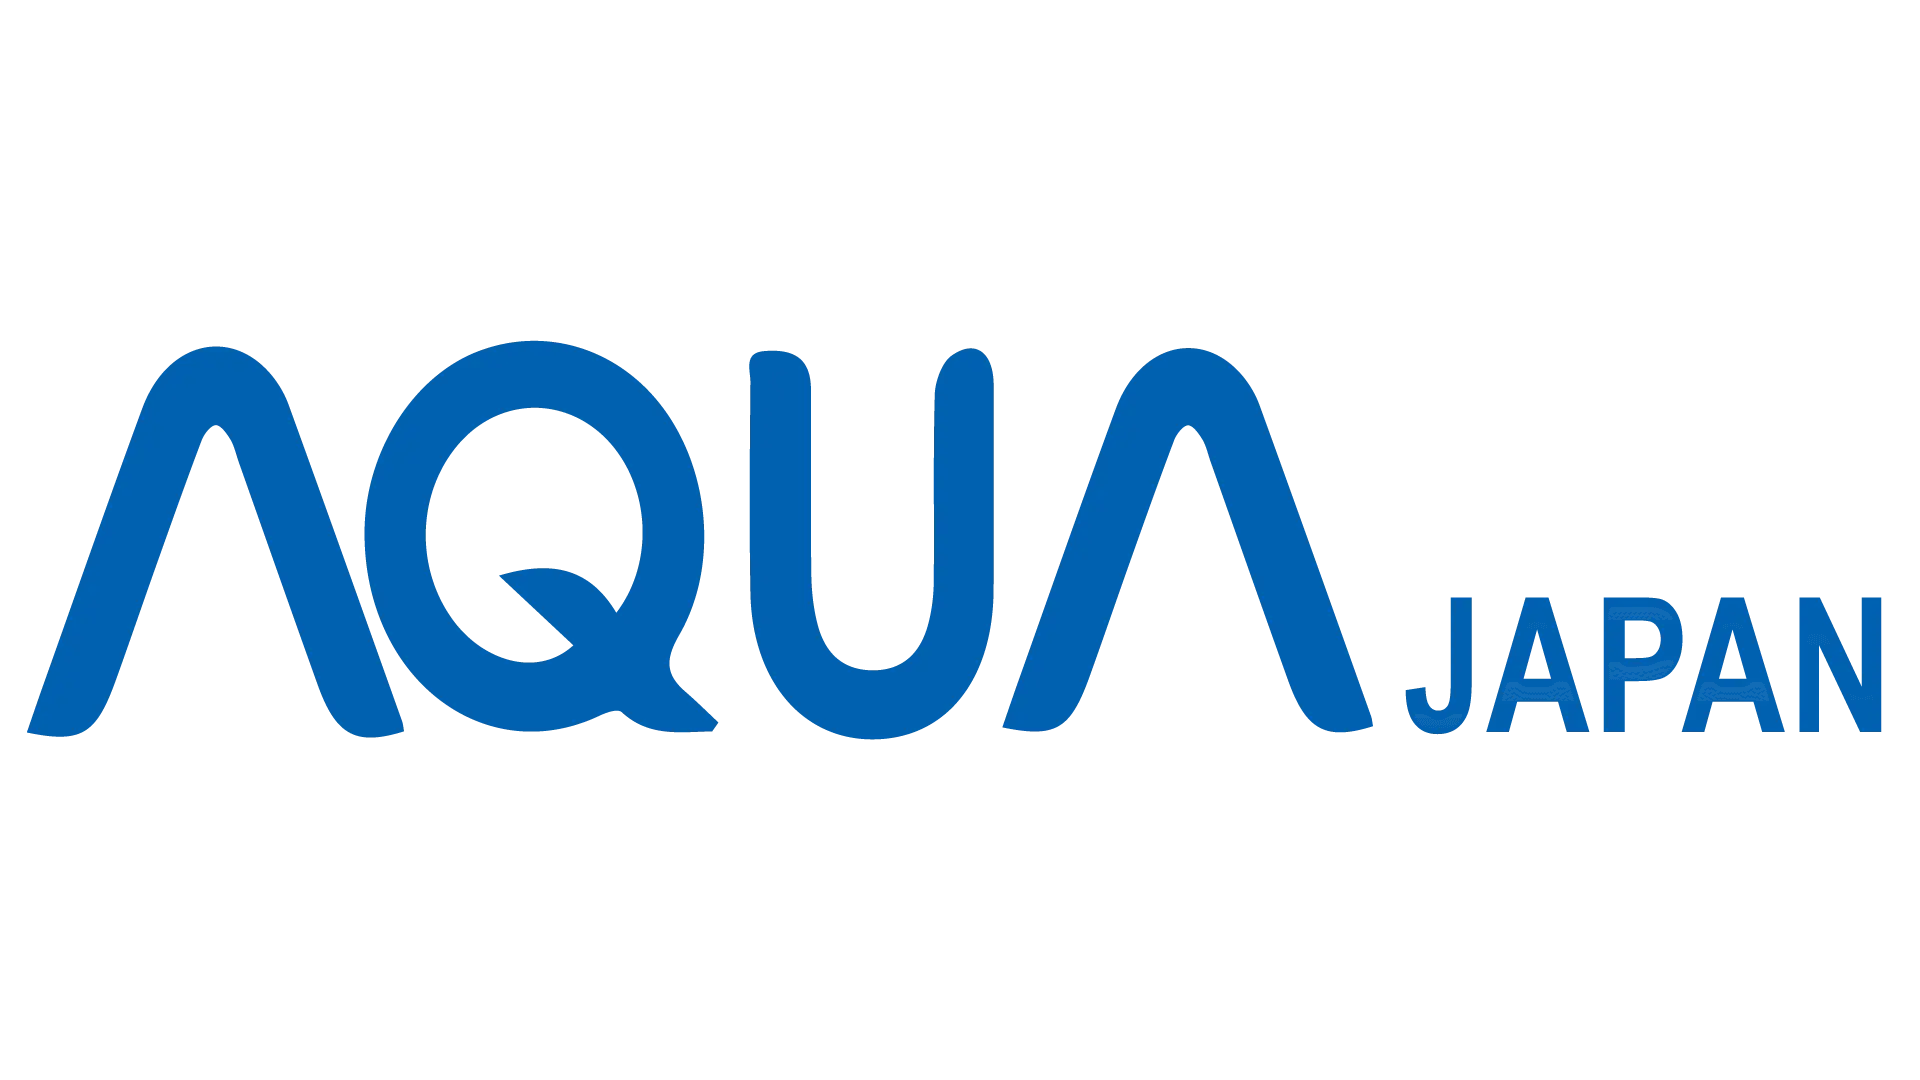 Pengelola Chatbot di bidang industri elektronik yang dimiliki oleh perusahaan Aqua Japan